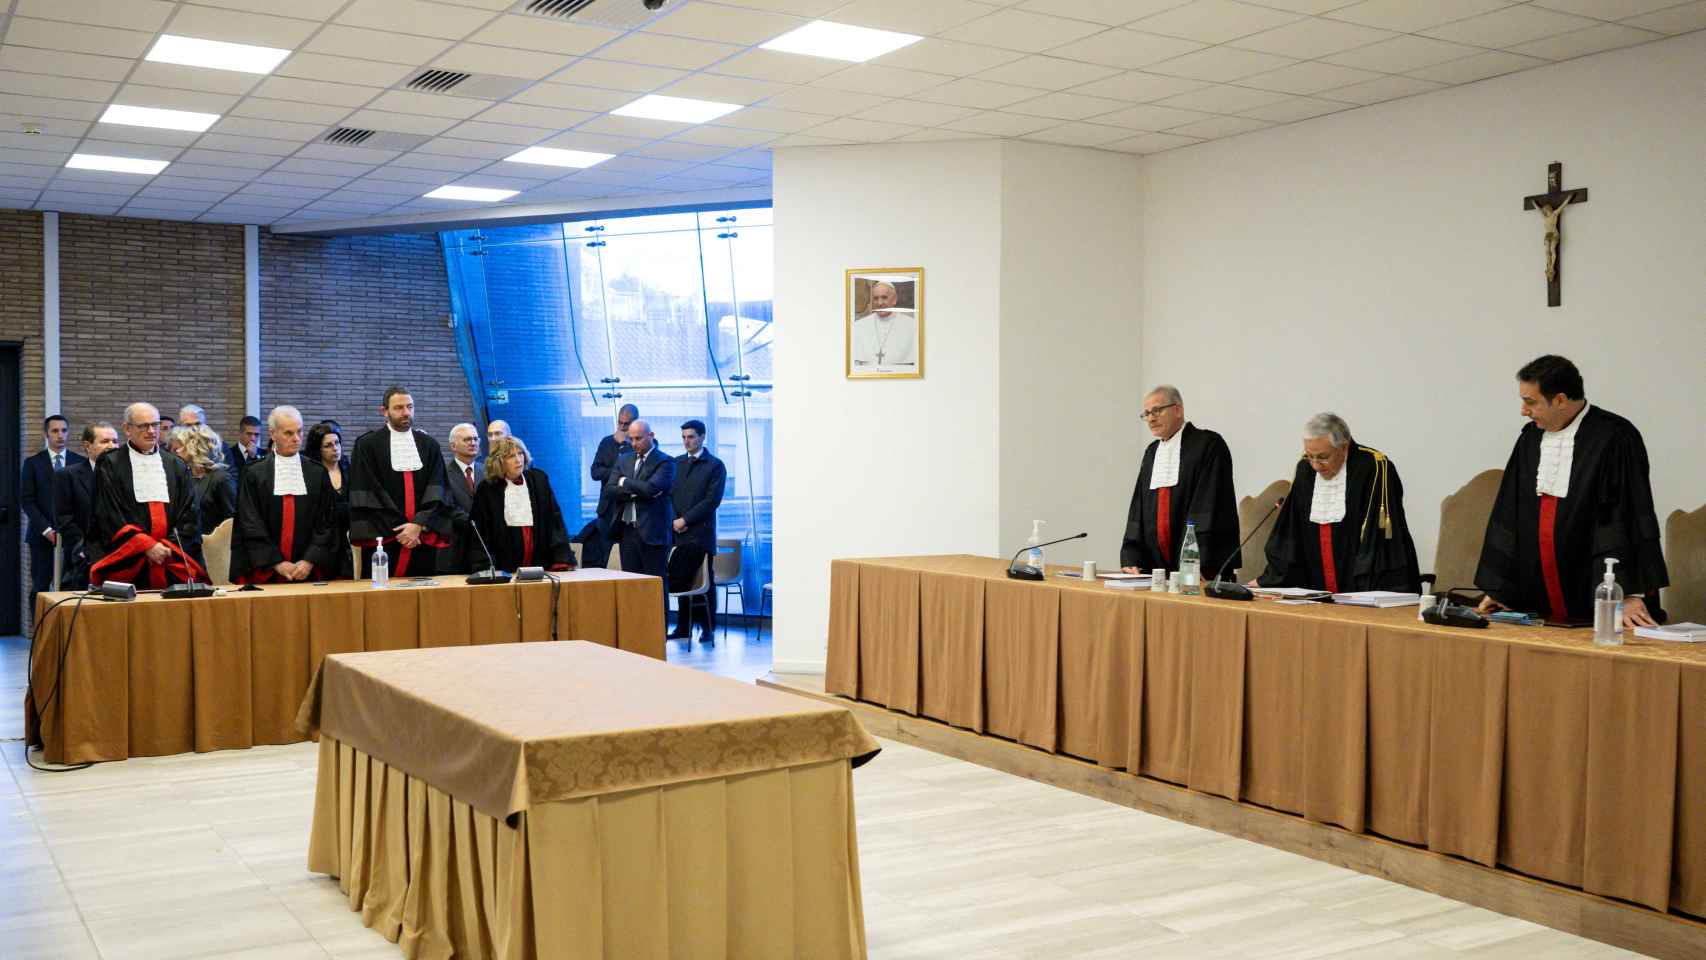 El juez Giuseppe Pignatone lee el veredicto del juicio por corrupción en el Vaticano, en el Vaticano.